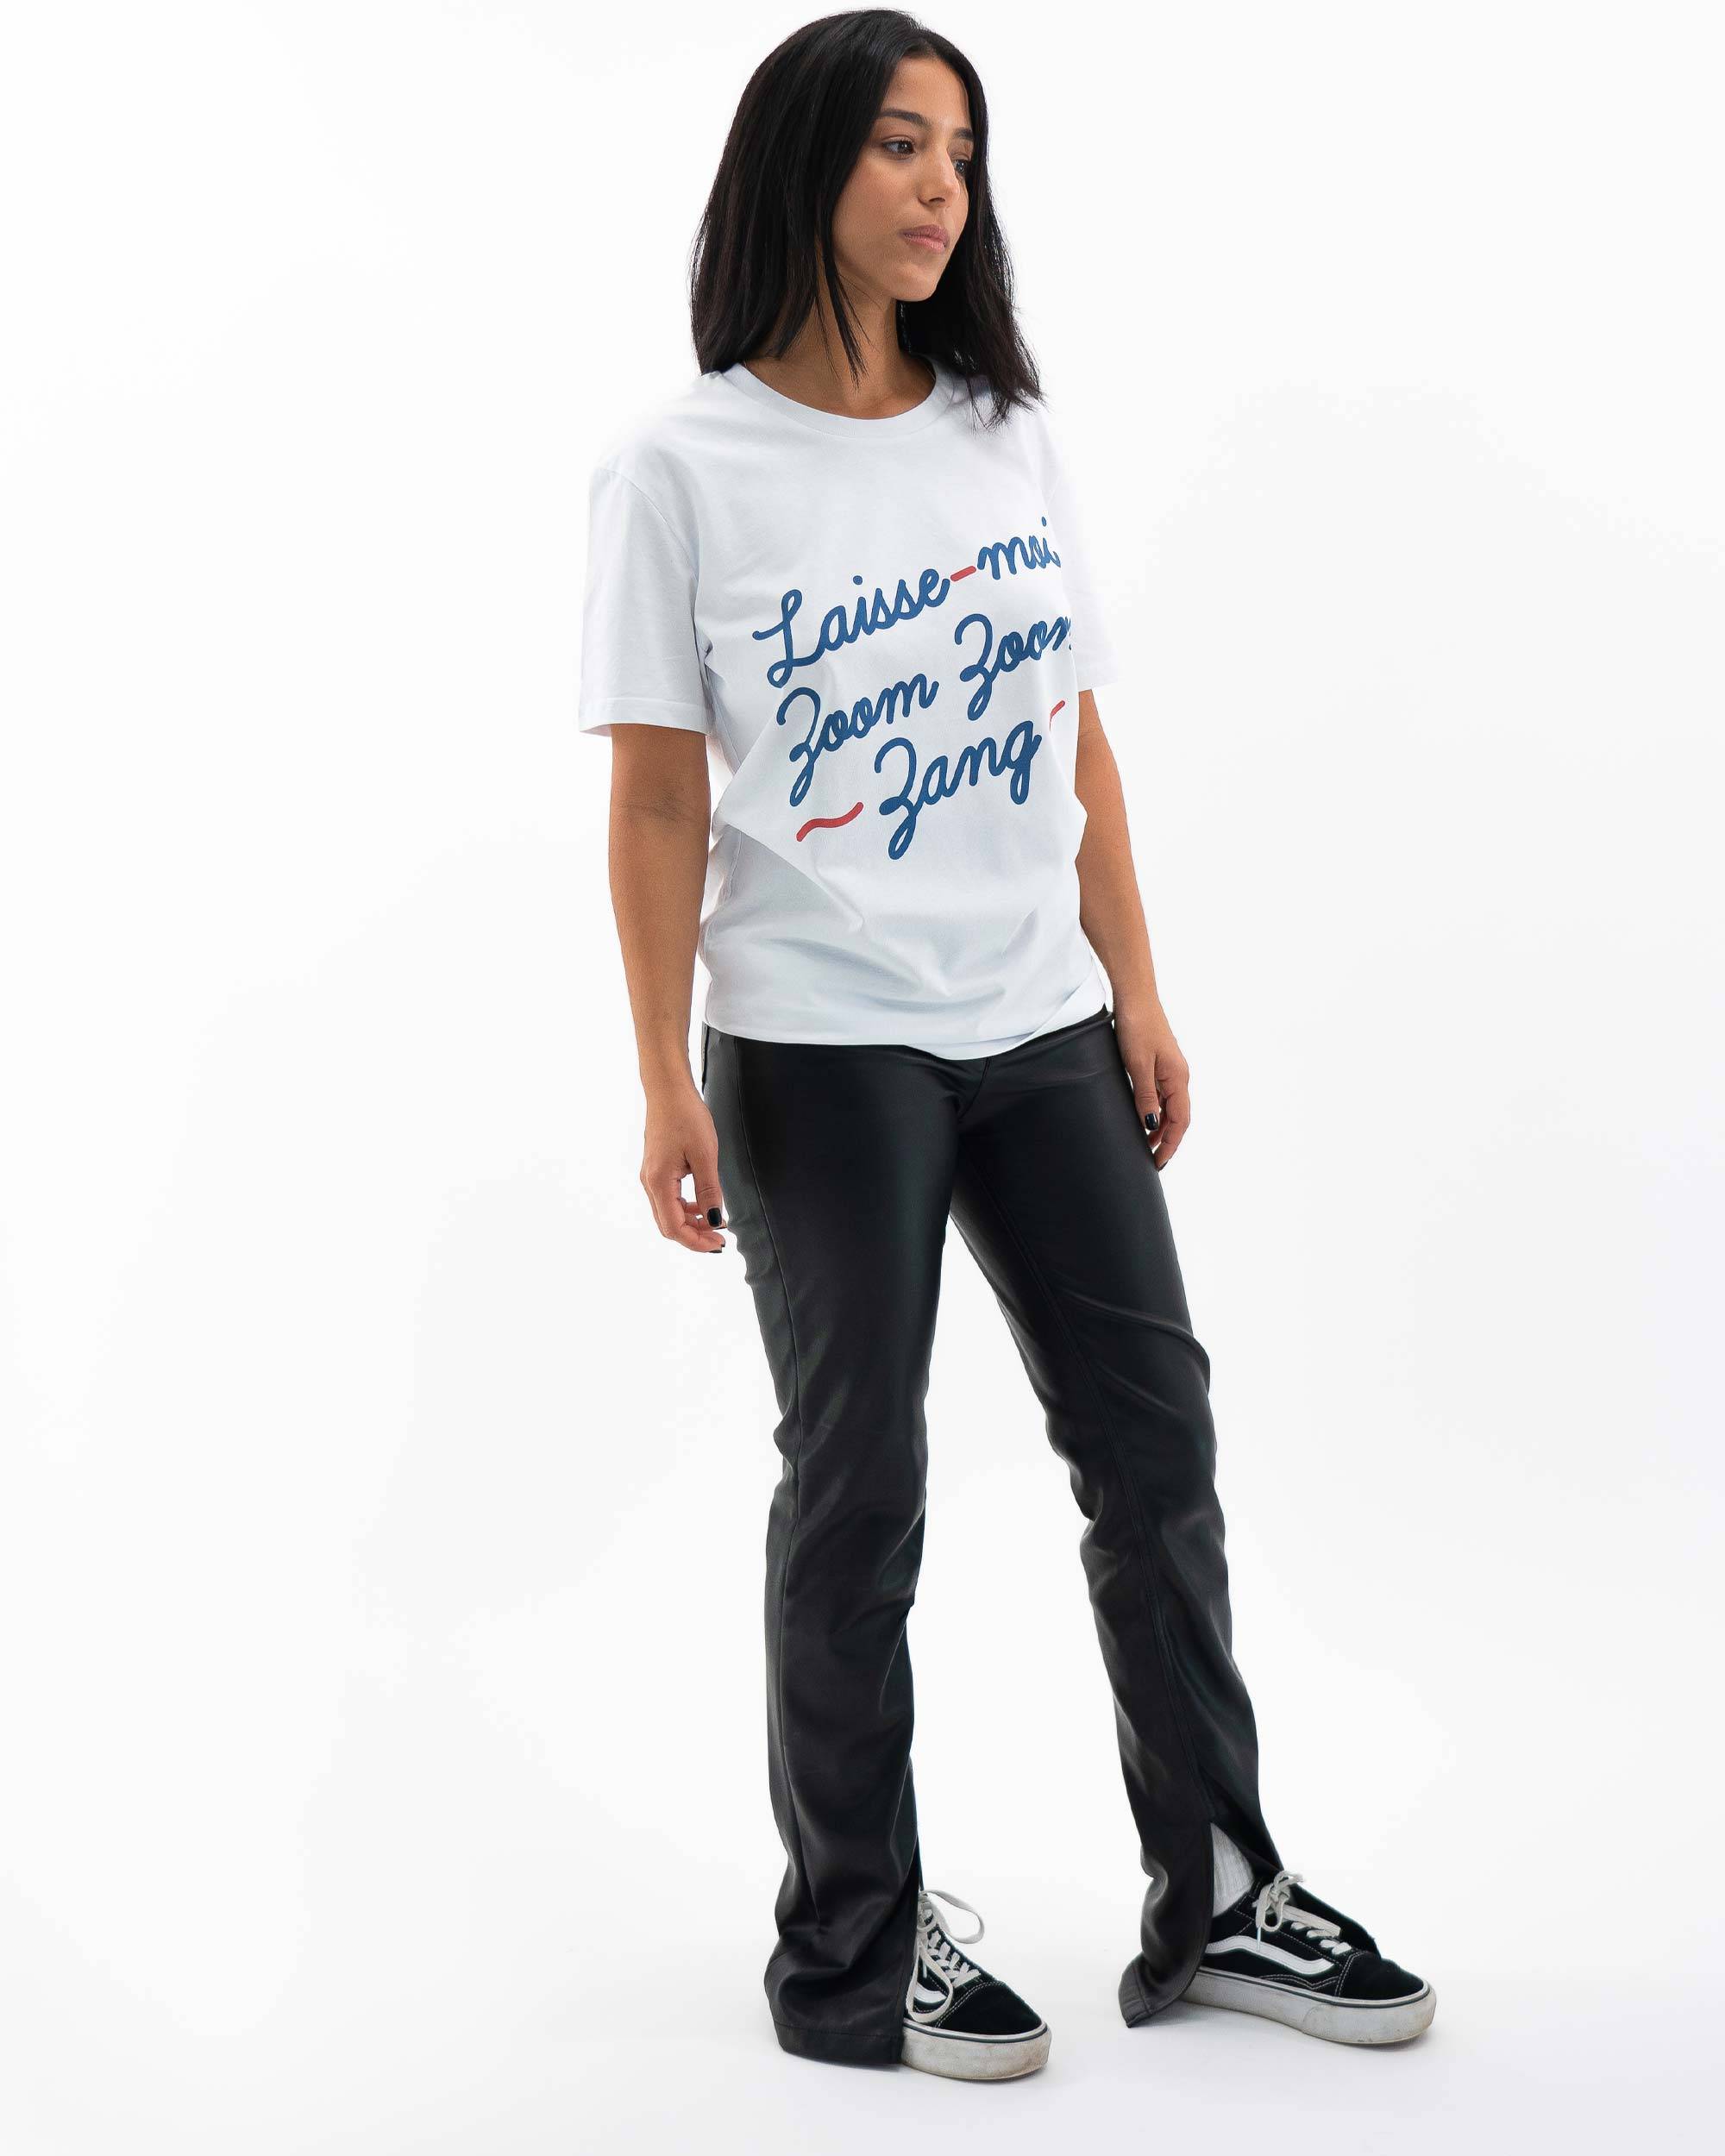 T-shirt Zoom Zoom Zang de couleur Blanc par Vague A L'Âme